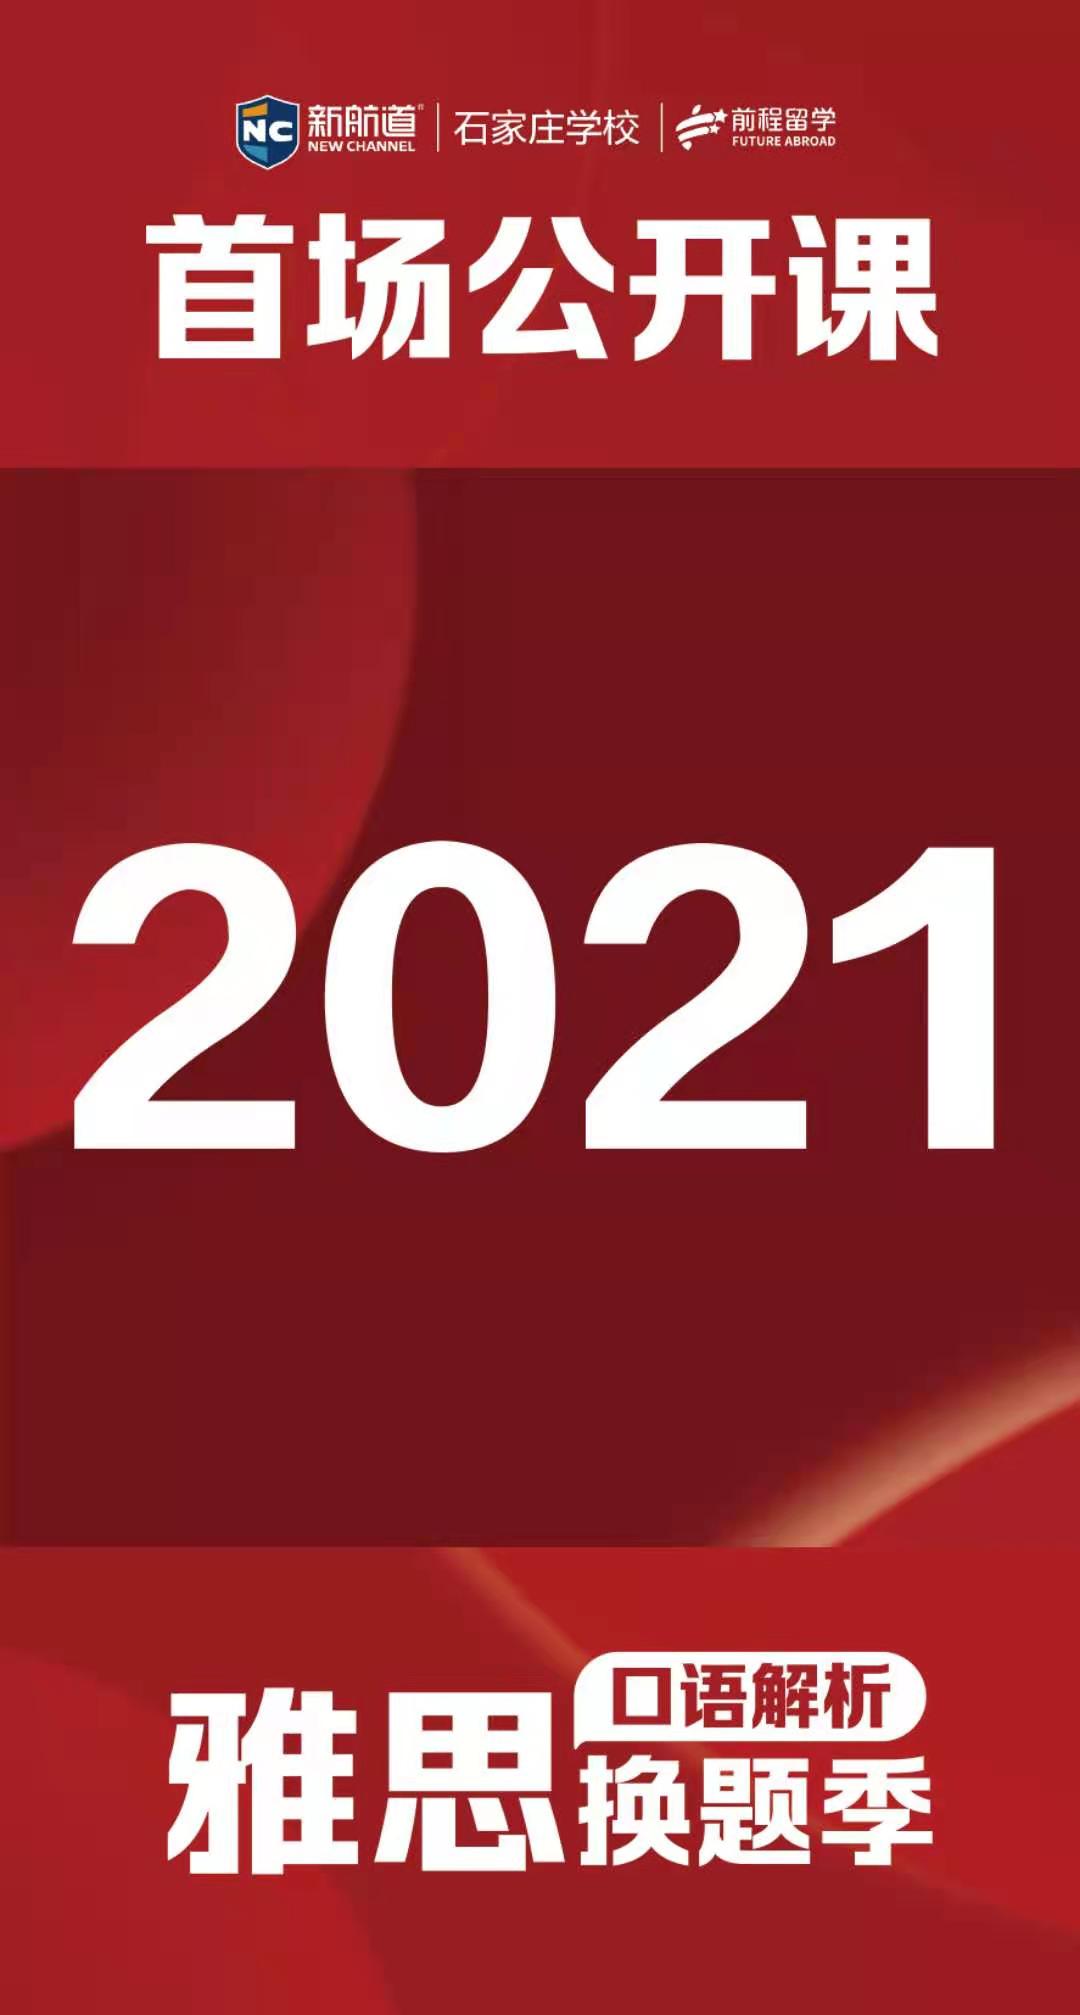 2021年度1月10号首场线上主题云讲座